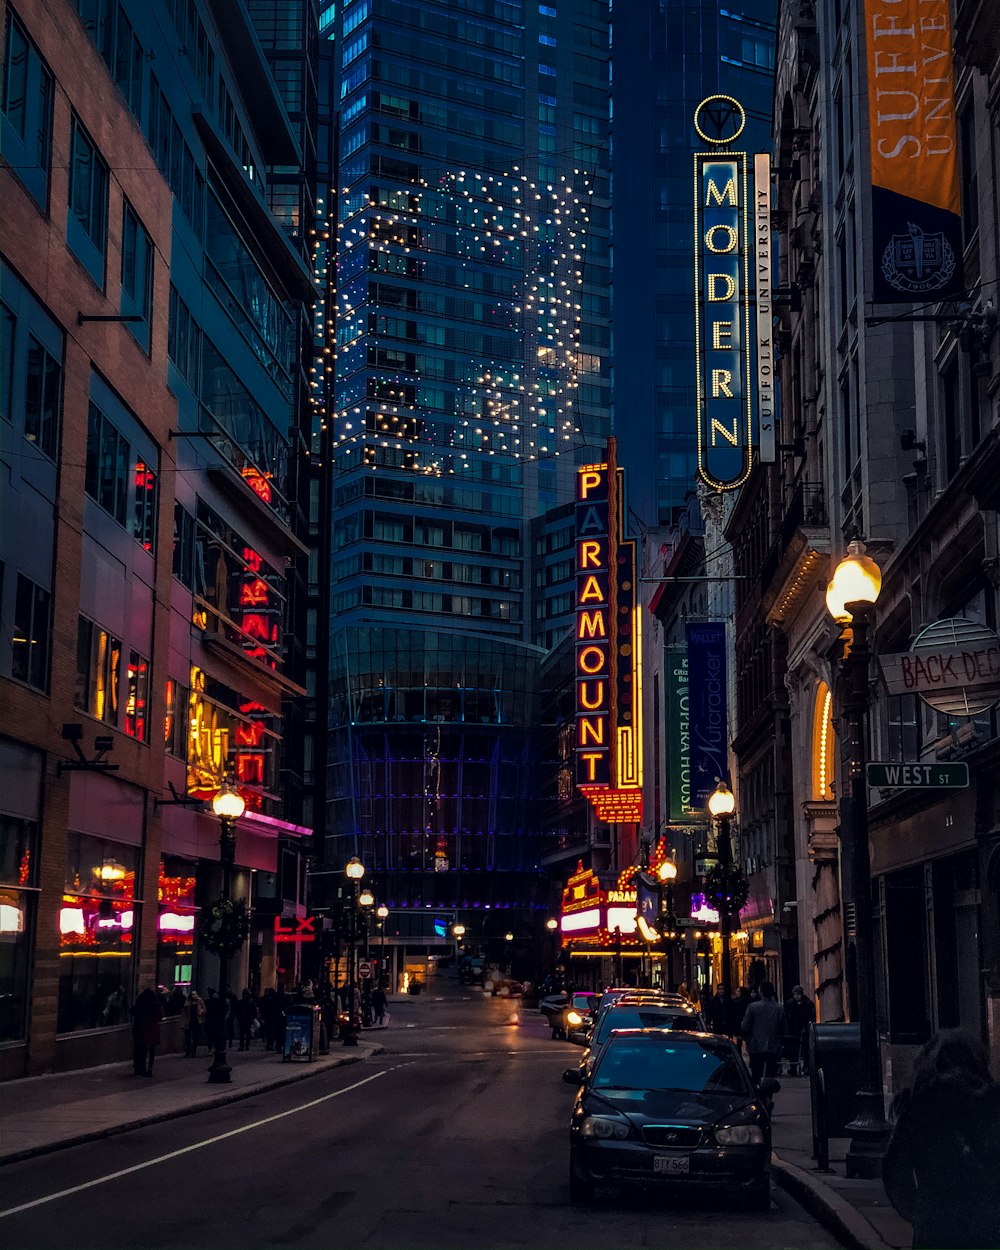 voitures sur la route entre des immeubles de grande hauteur pendant la nuit